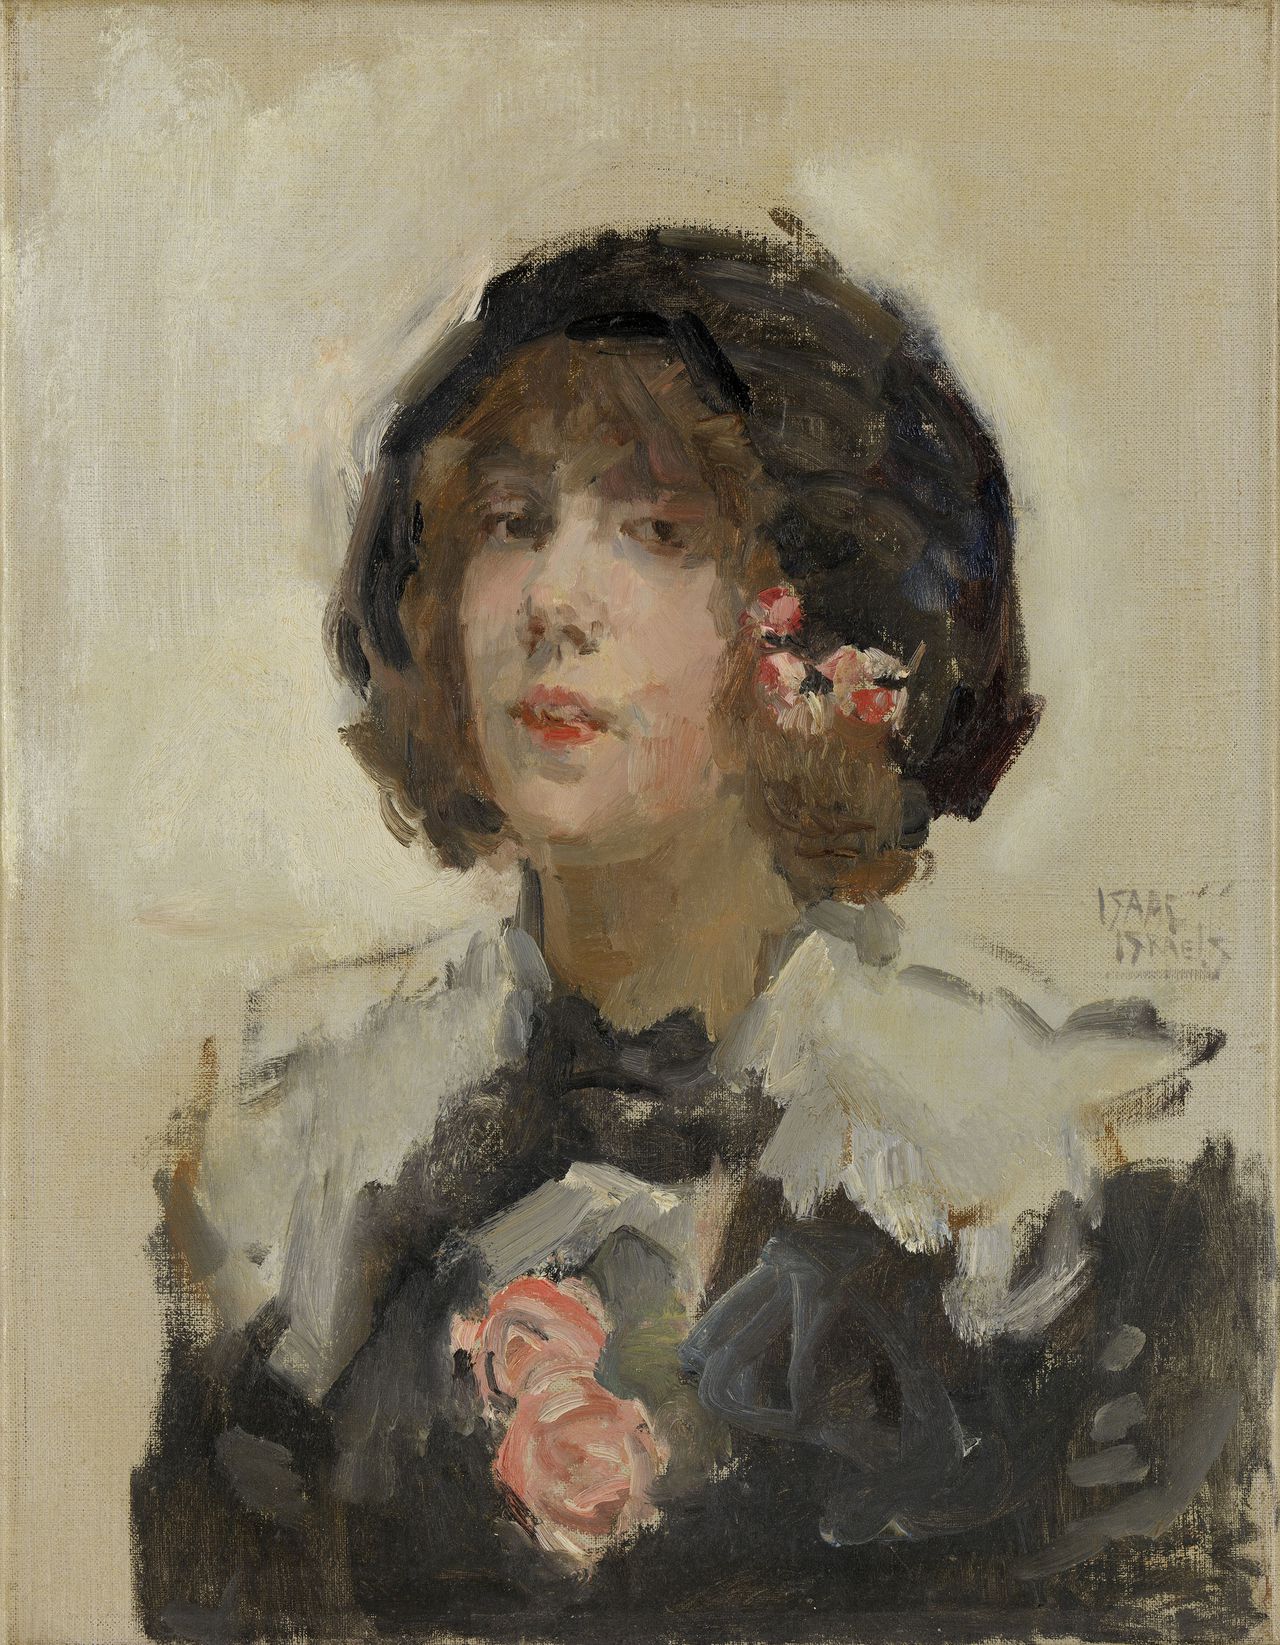 I. Israels, ‘Portret van een vrouw’, (1900), coll. Rijksmuseum, Amsterdam.